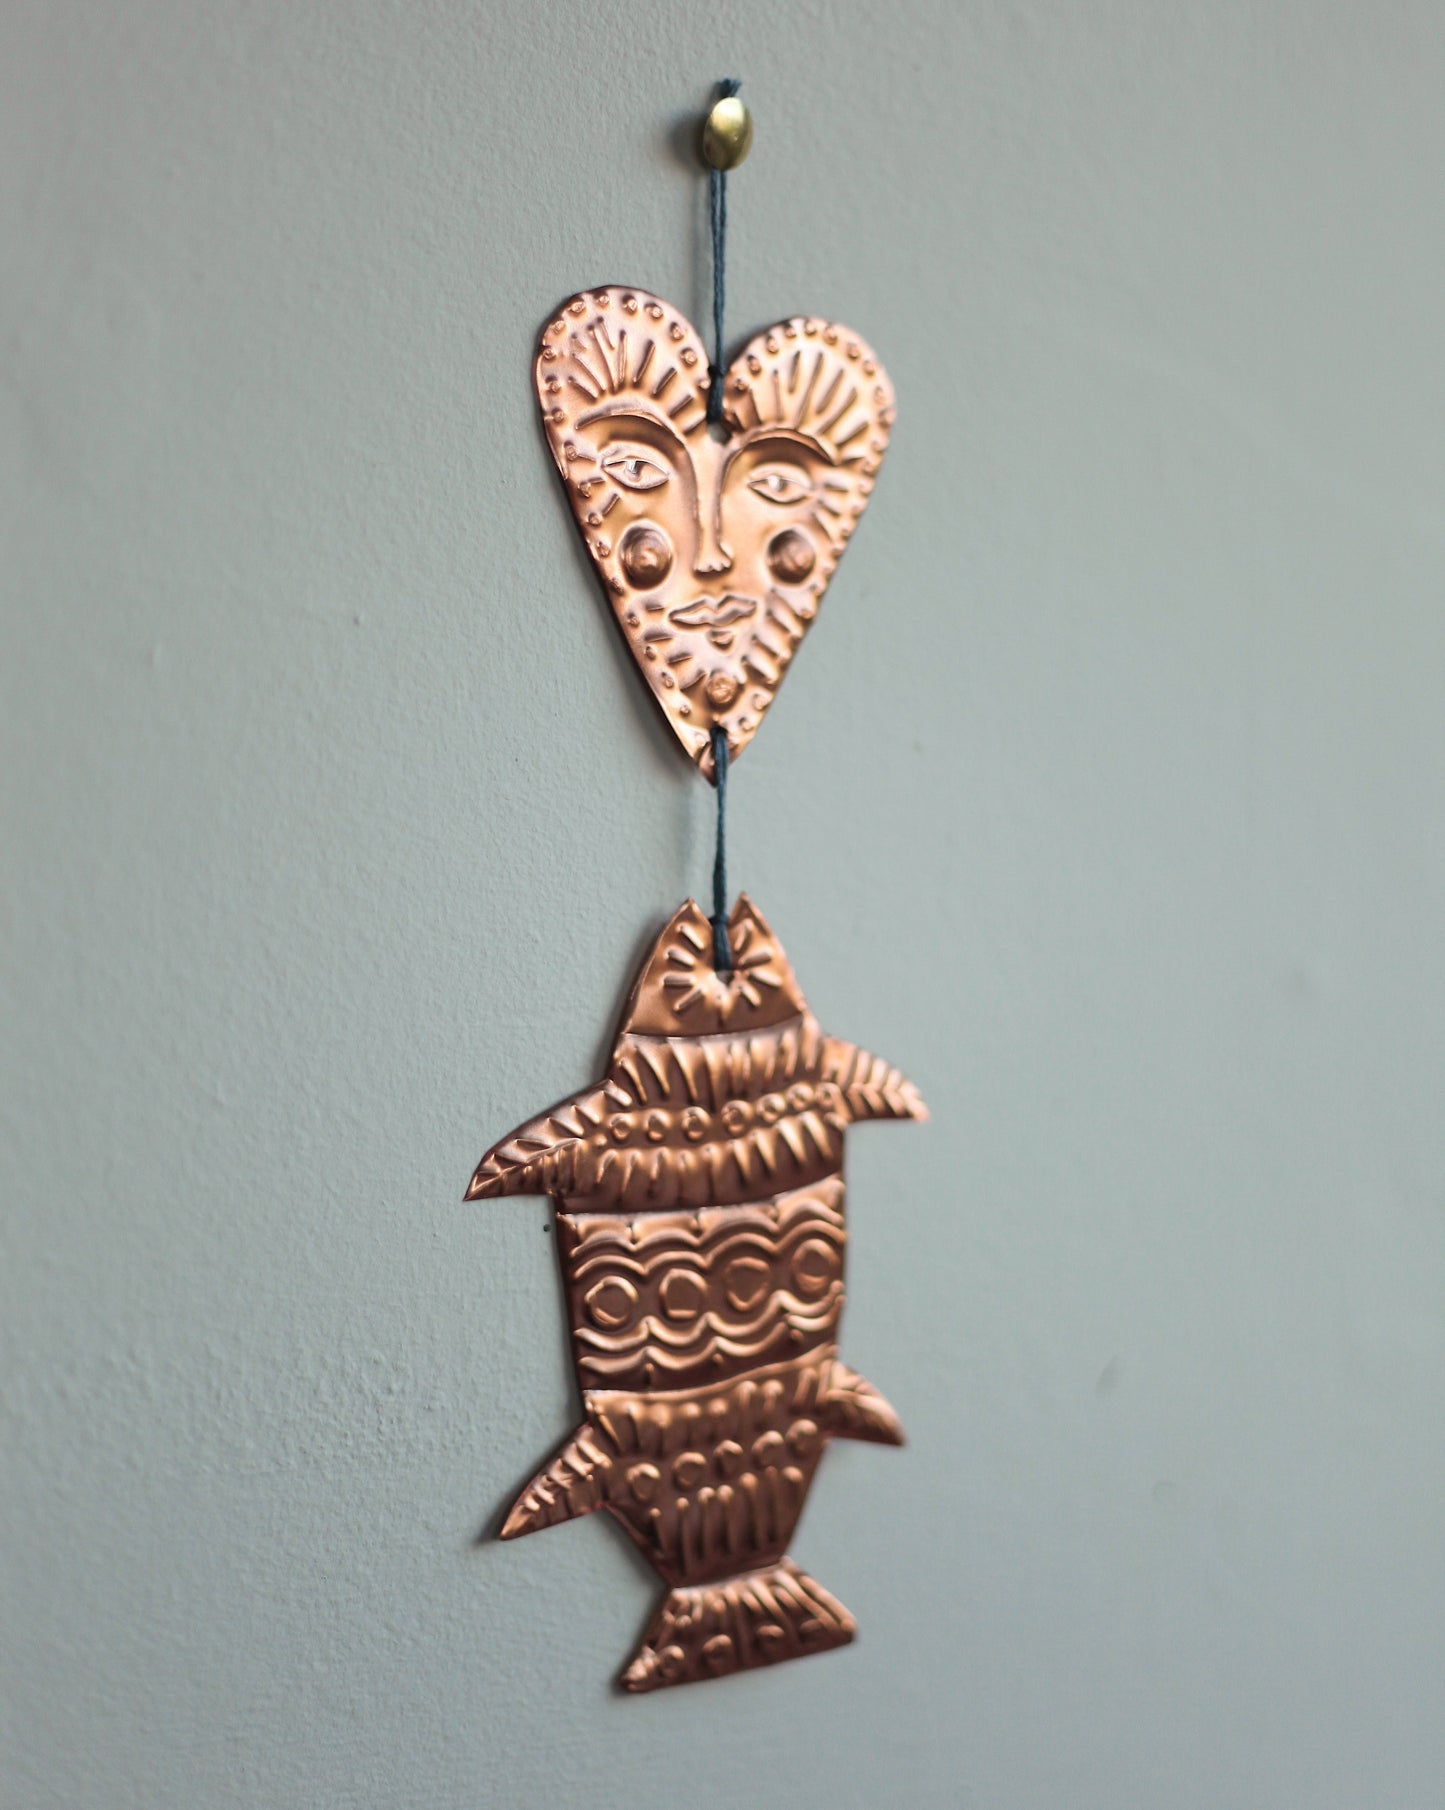 Copper Fish and Heart Ornament